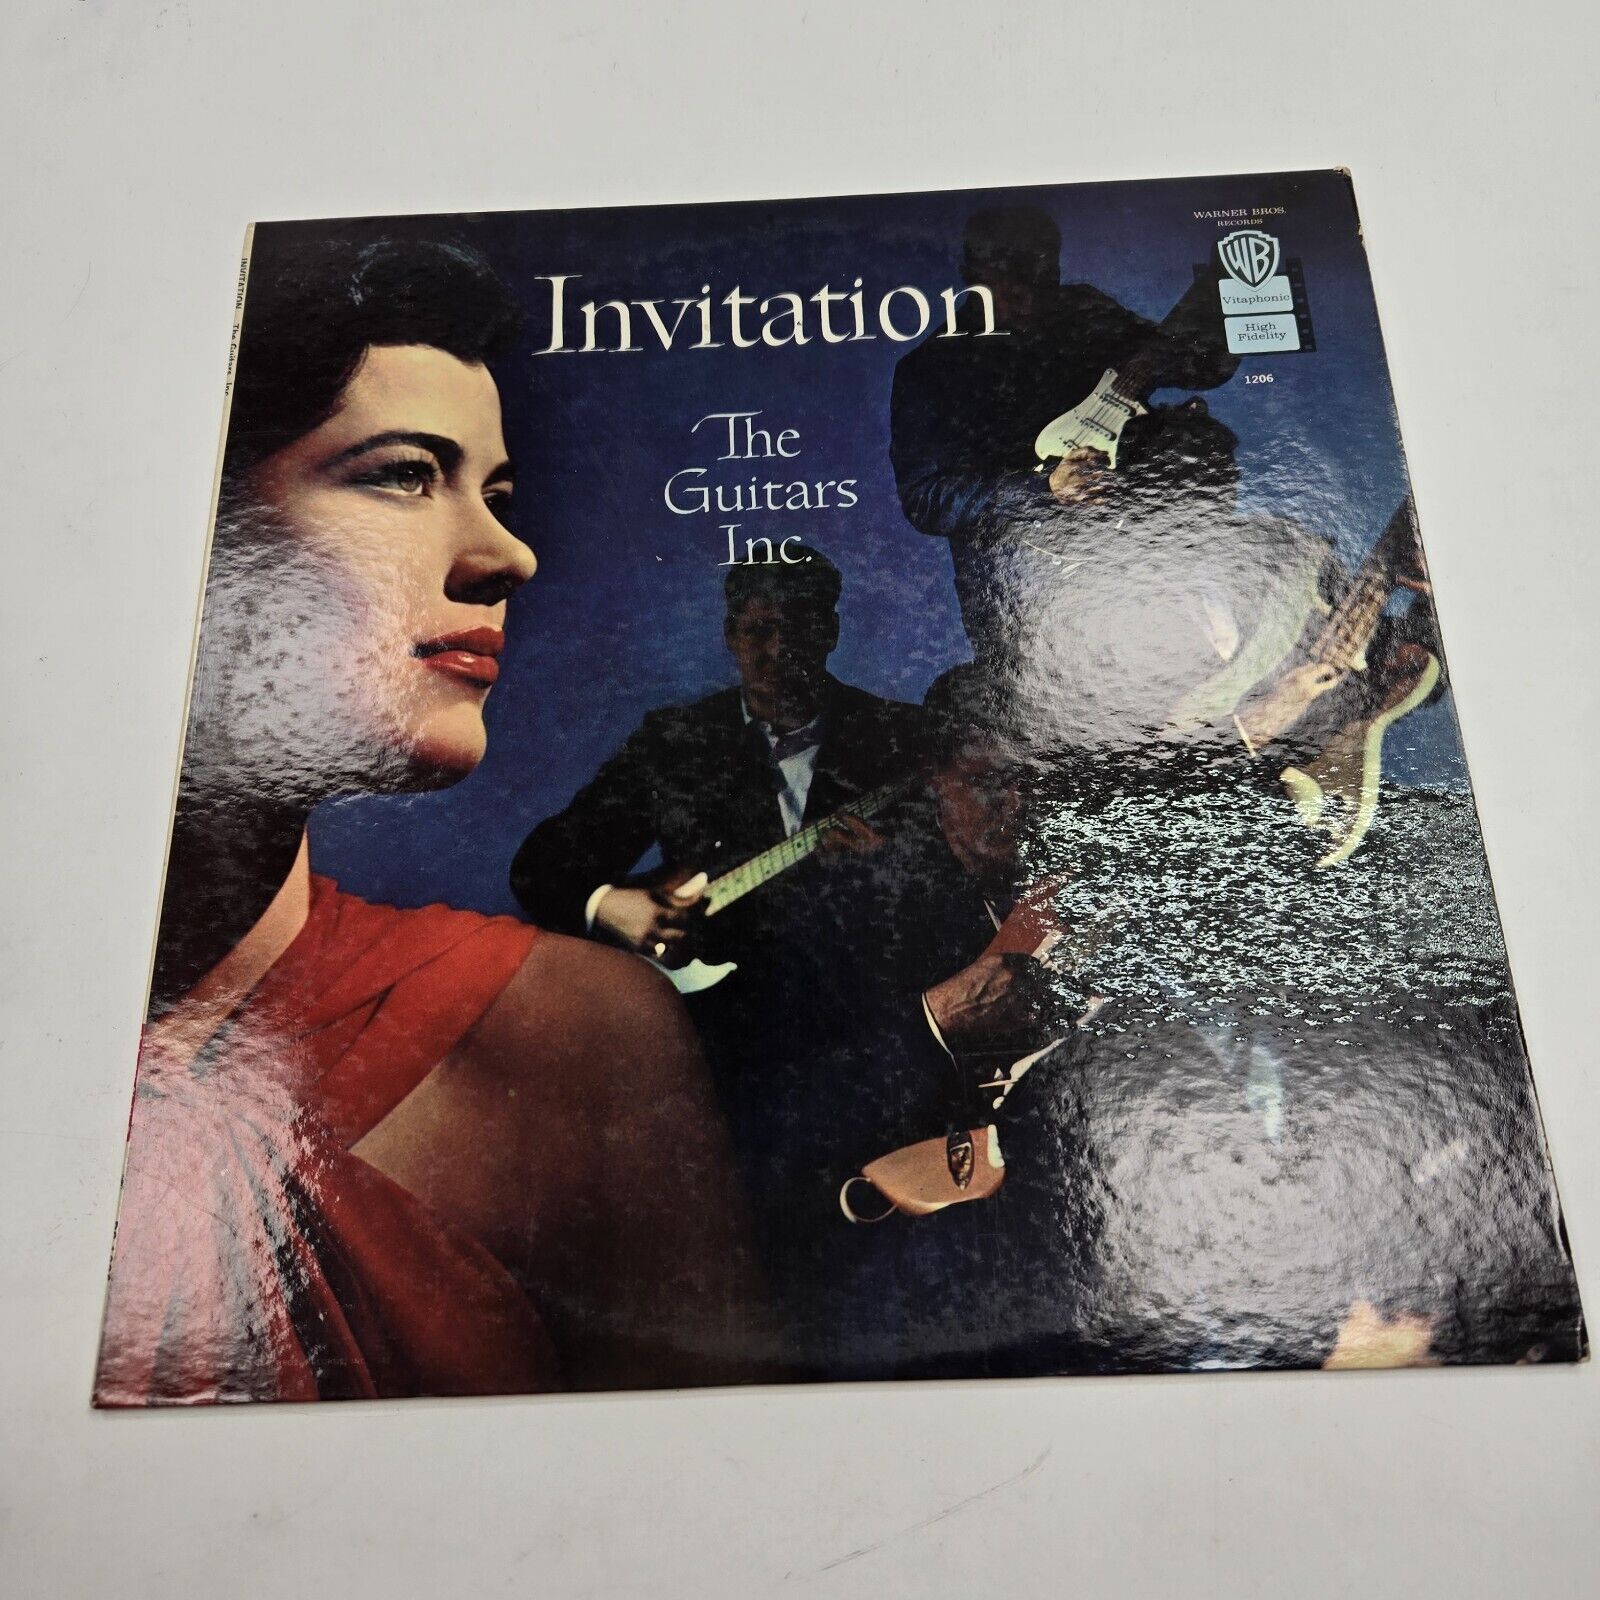 The Guitars, Inc. - Invitation - Lp Vinyl Record Album RARE BS 1206 Warner Bros.